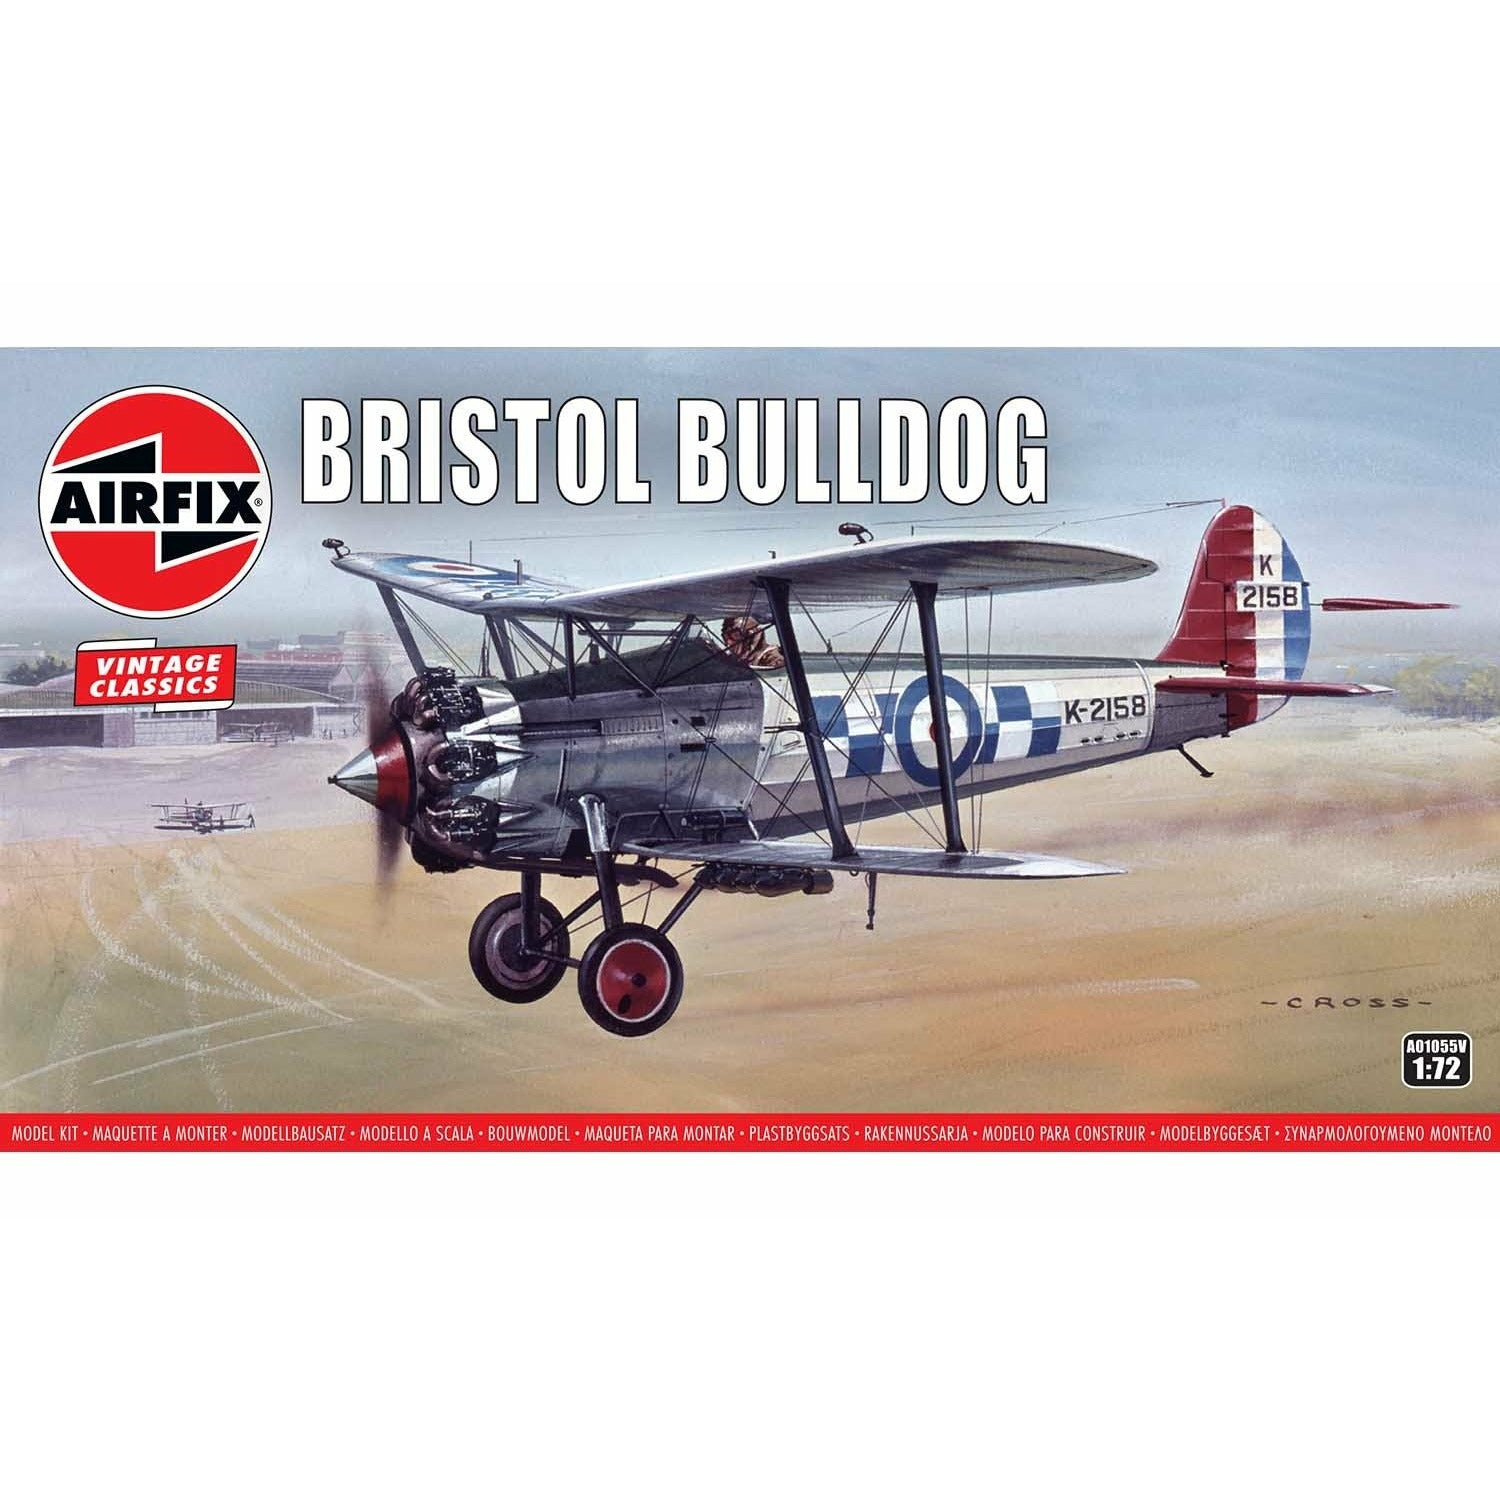 Bristol Bulldog 1/72 #A01055V by Airfix